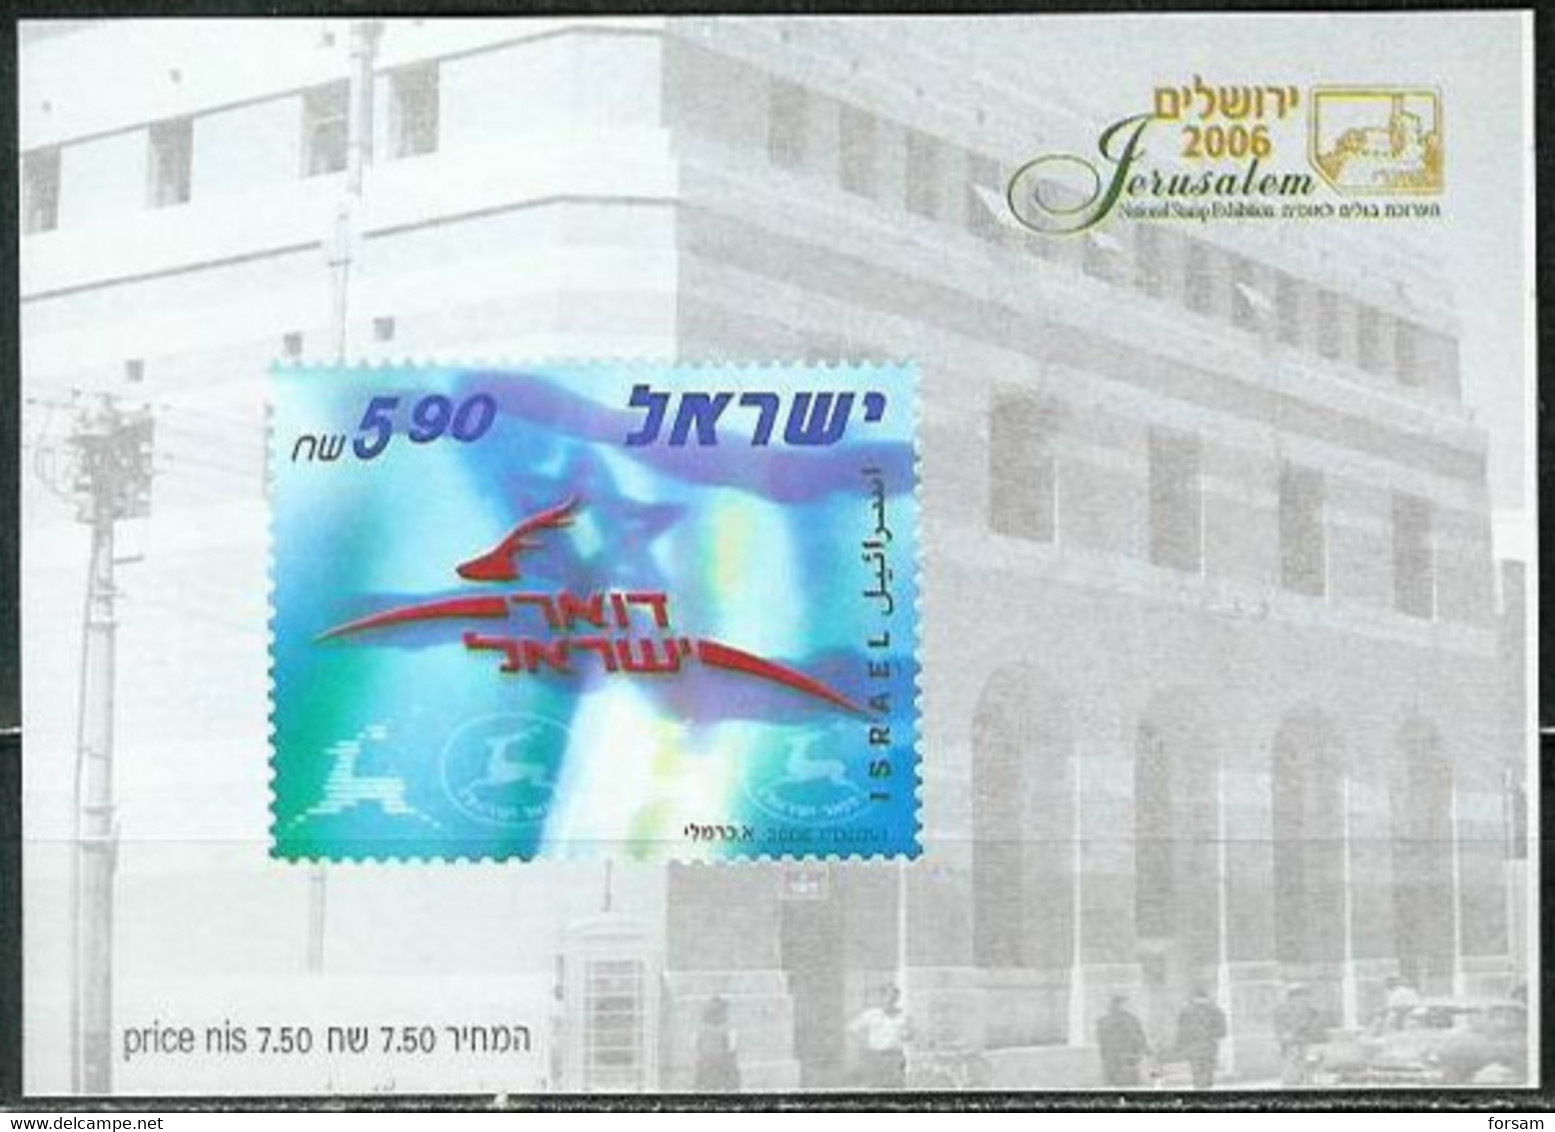 ISRAEL..2006..Michel # Block 71 (# 1860)...MNH...MiCV - 4.50 Euro. - Ungebraucht (mit Tabs)